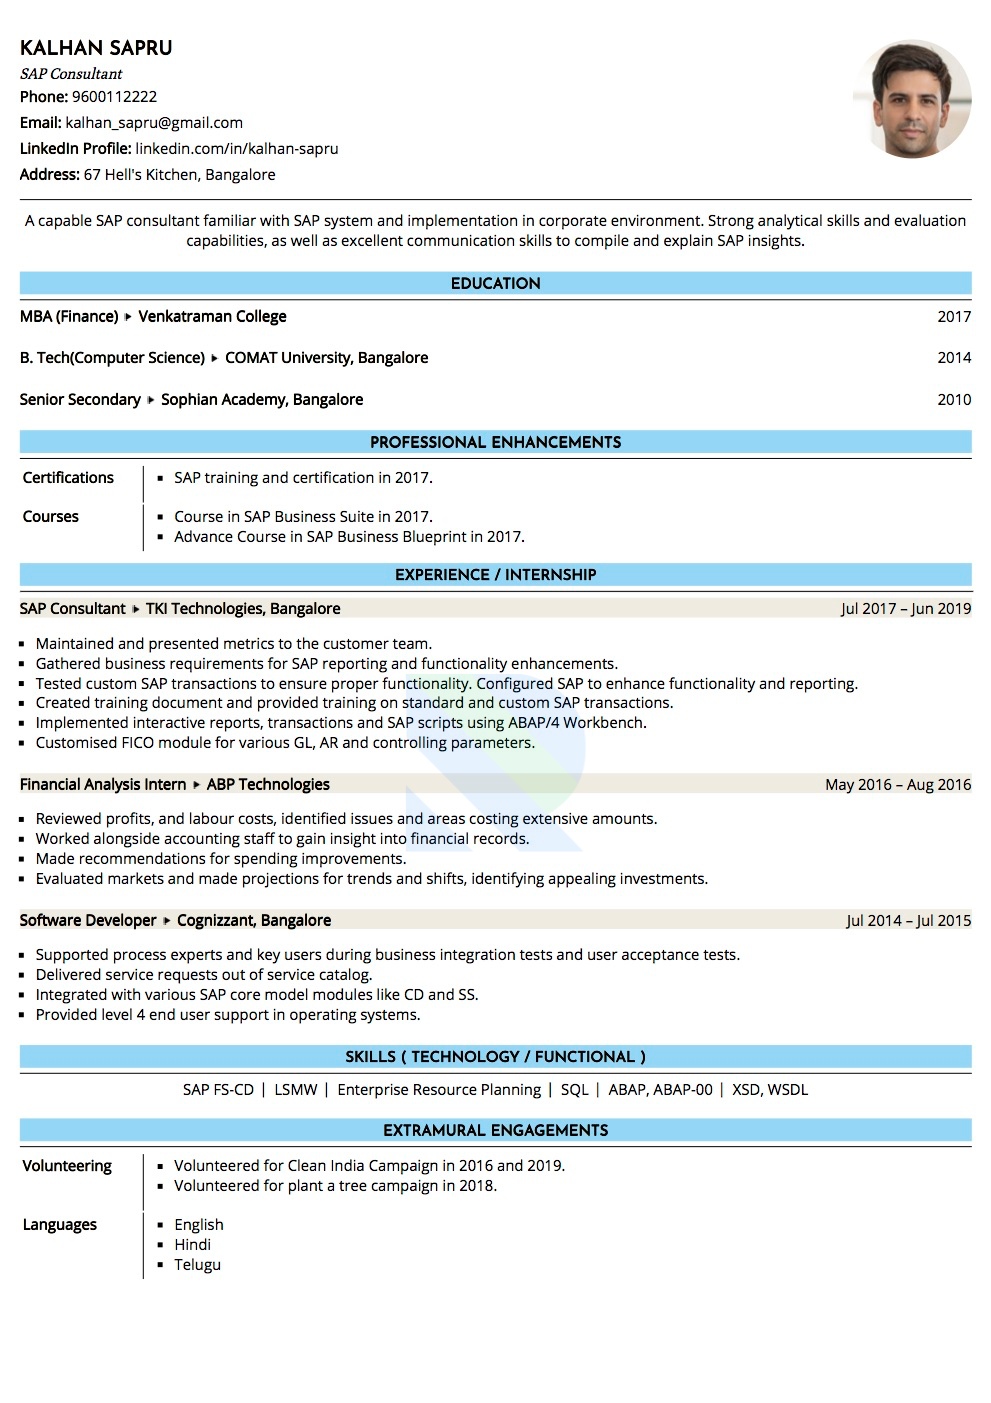 Resume of SAP Consultant 